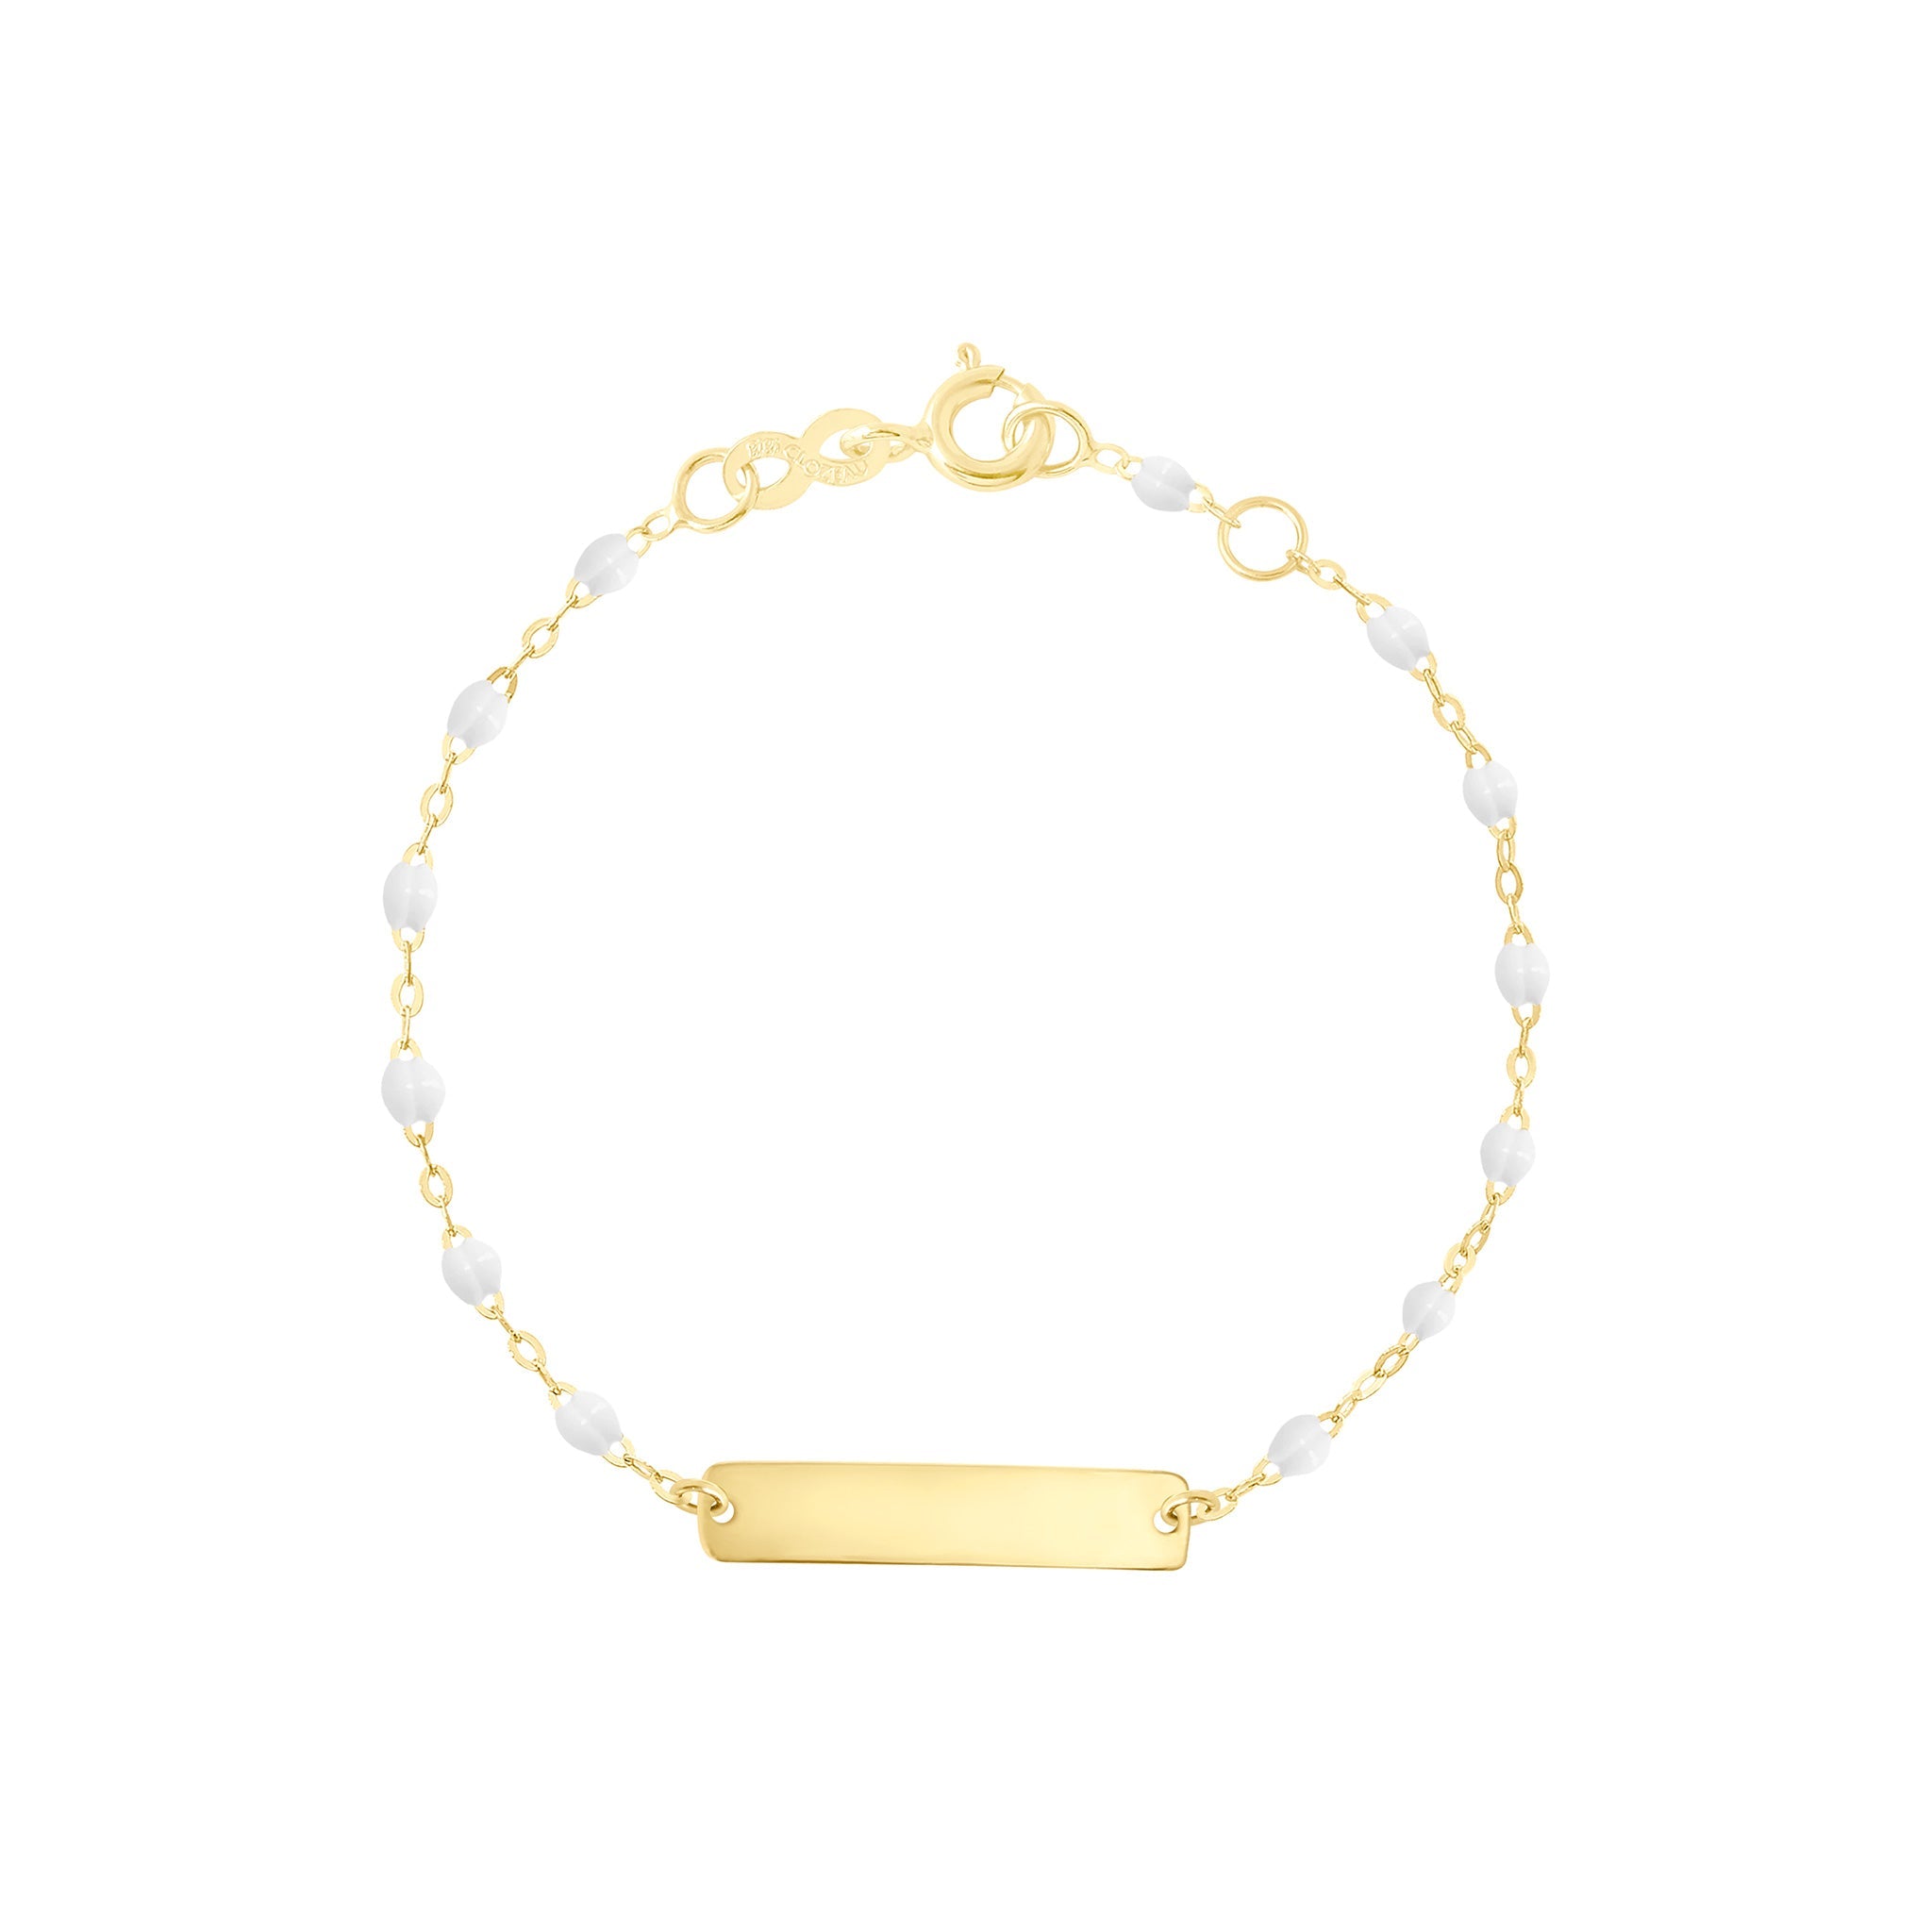 Bracelet blanc Little Gigi, plaque rectangle, or jaune, 13 cm little gigi Référence :  b3lg001j0113xx -1